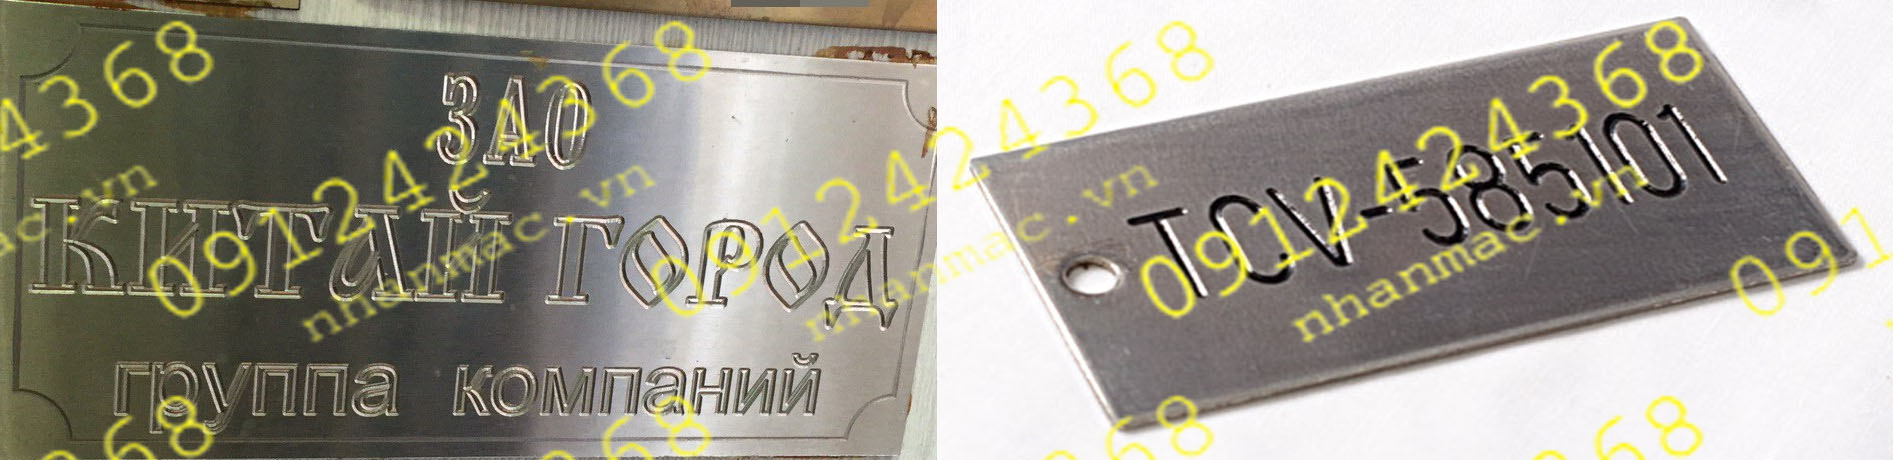 TKP24- Tem nhãn mác Logo nhôm đồng inox kim loại phay nổi CNC làm tag name plate thiết bị công nghiệp